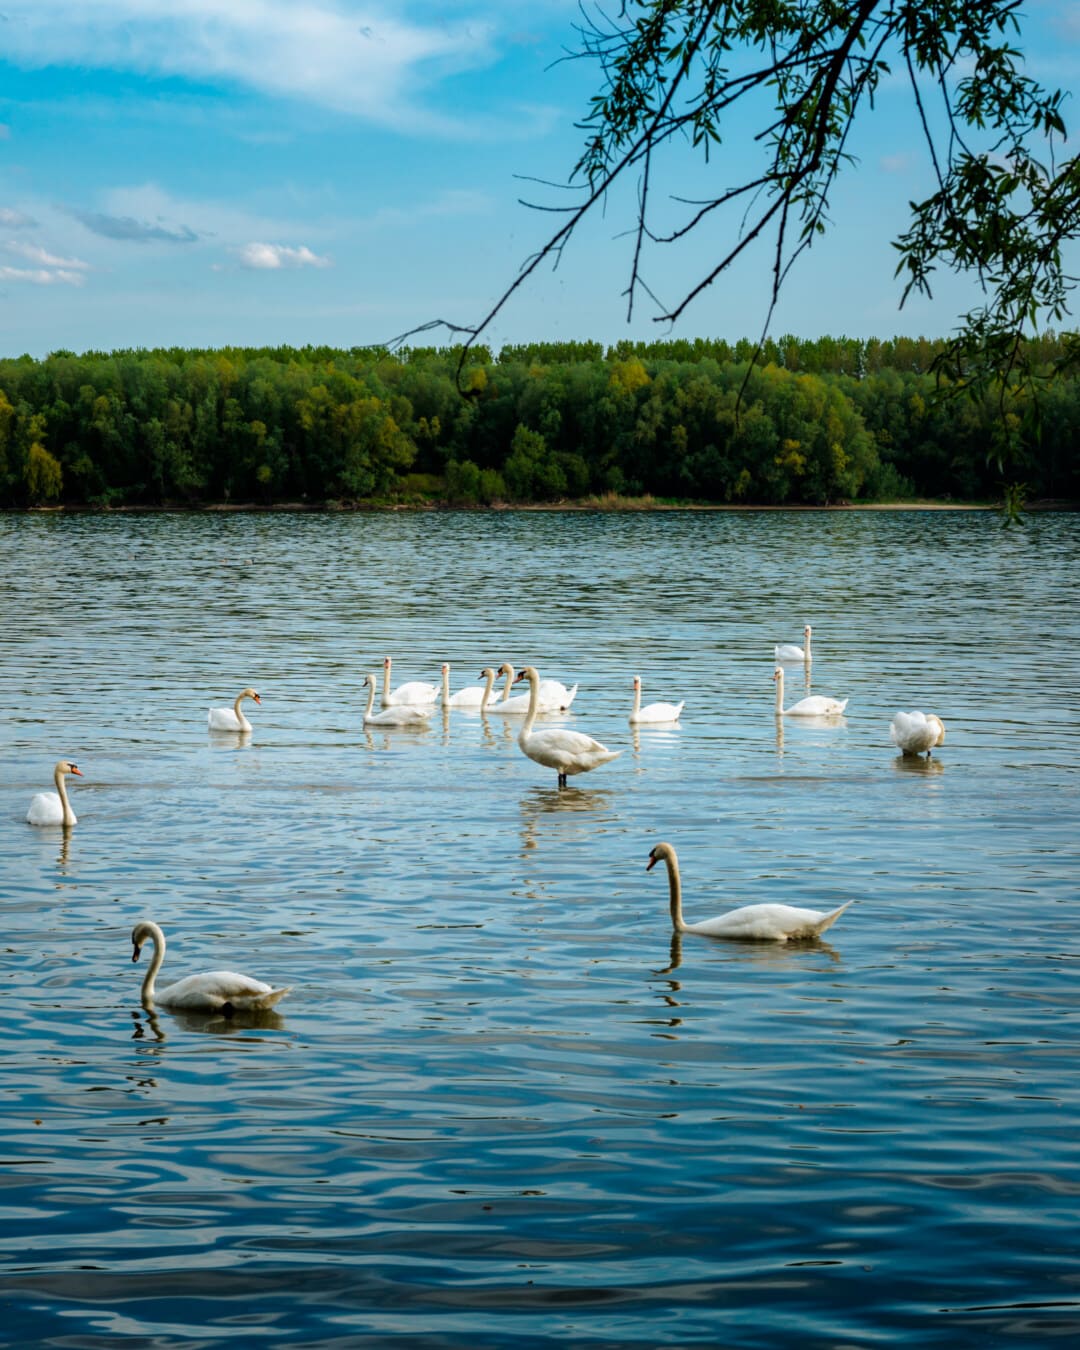 svan, Donau flod, floden, flock, naturliga livsmiljö, sjöfåglar, fågel, vattenlevande fågel, sjön, vatten